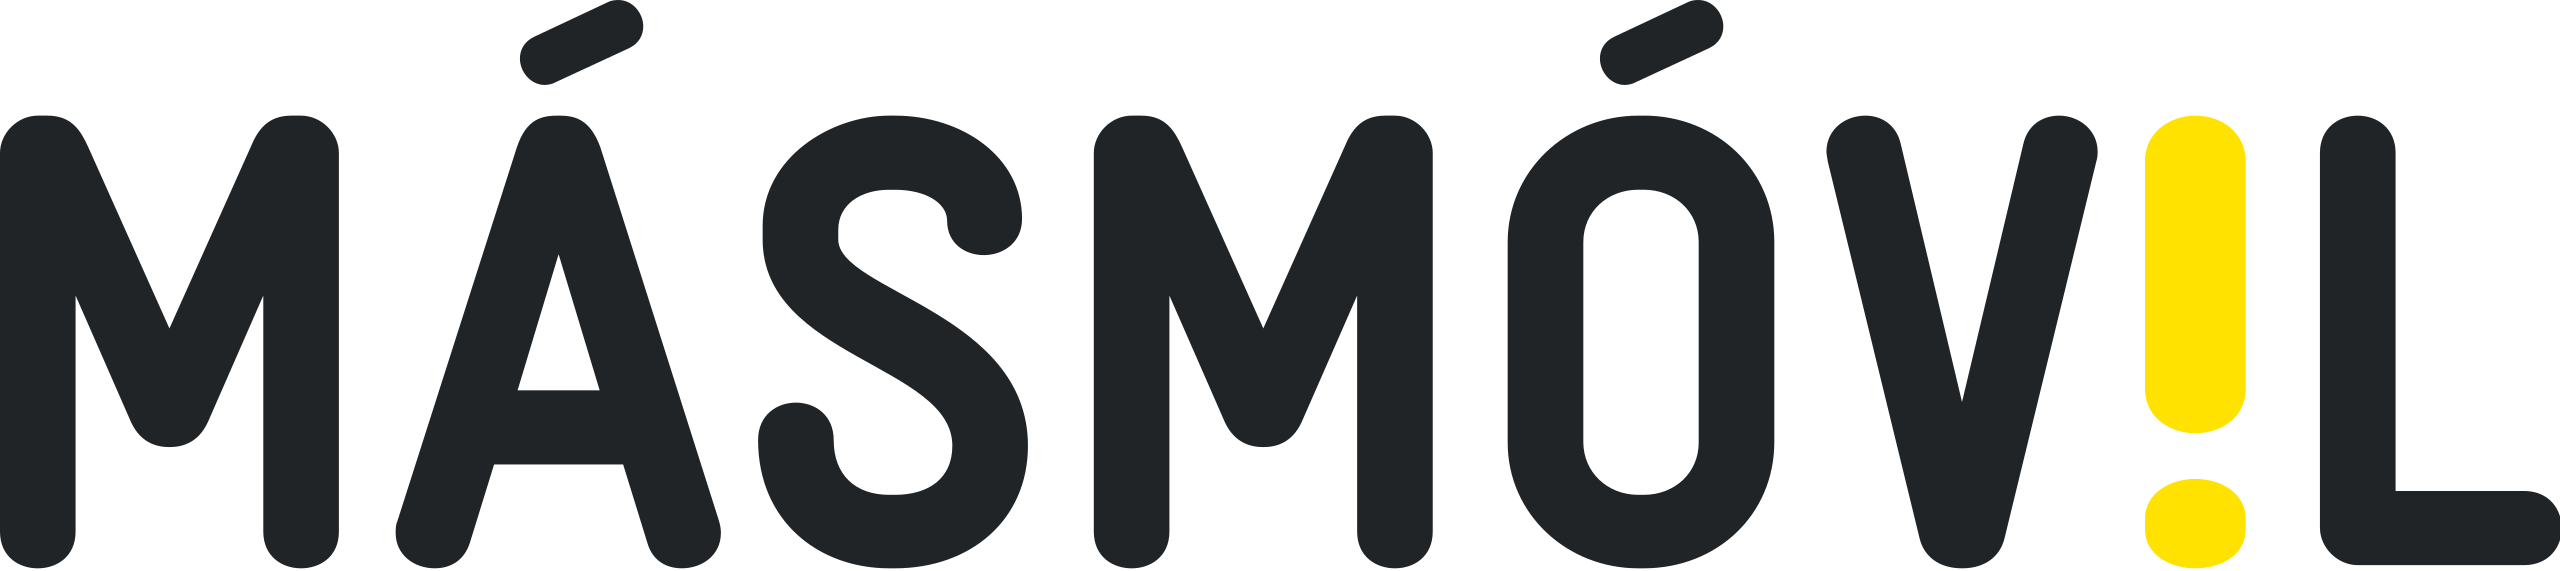 masmovil logo